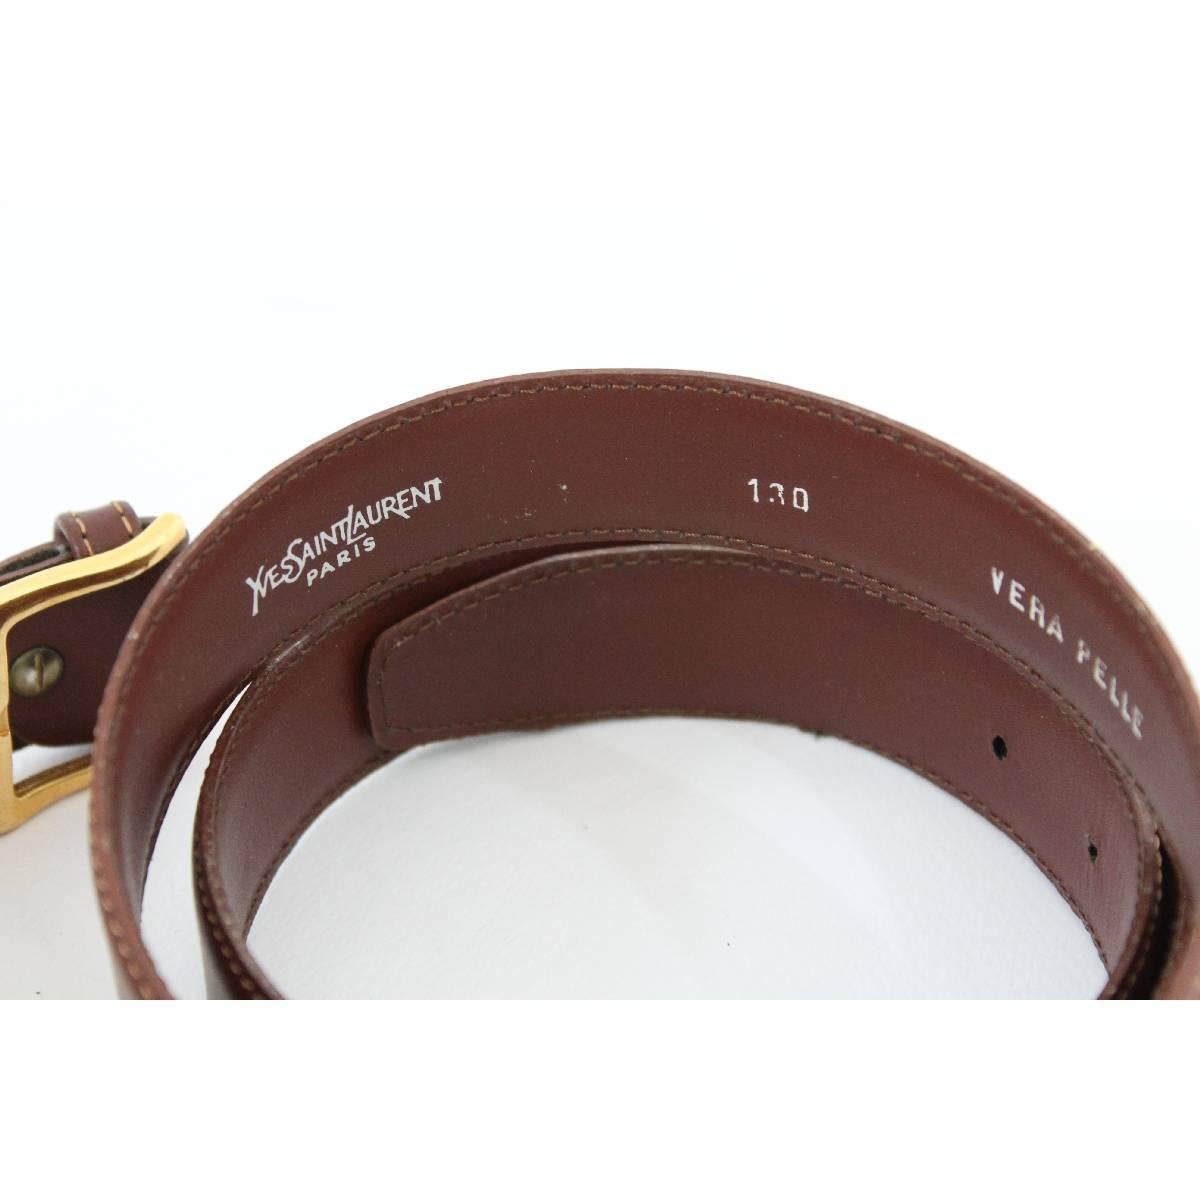 Yves Saint Laurent brown belt vintage gold plated bucke 130 cm x 3 cm 1980s. Excellent vintage condition.

Lenght: 130 cm
Large: 3 cm

Composition: 100% leather
Color: Brown
Condition: Excellent